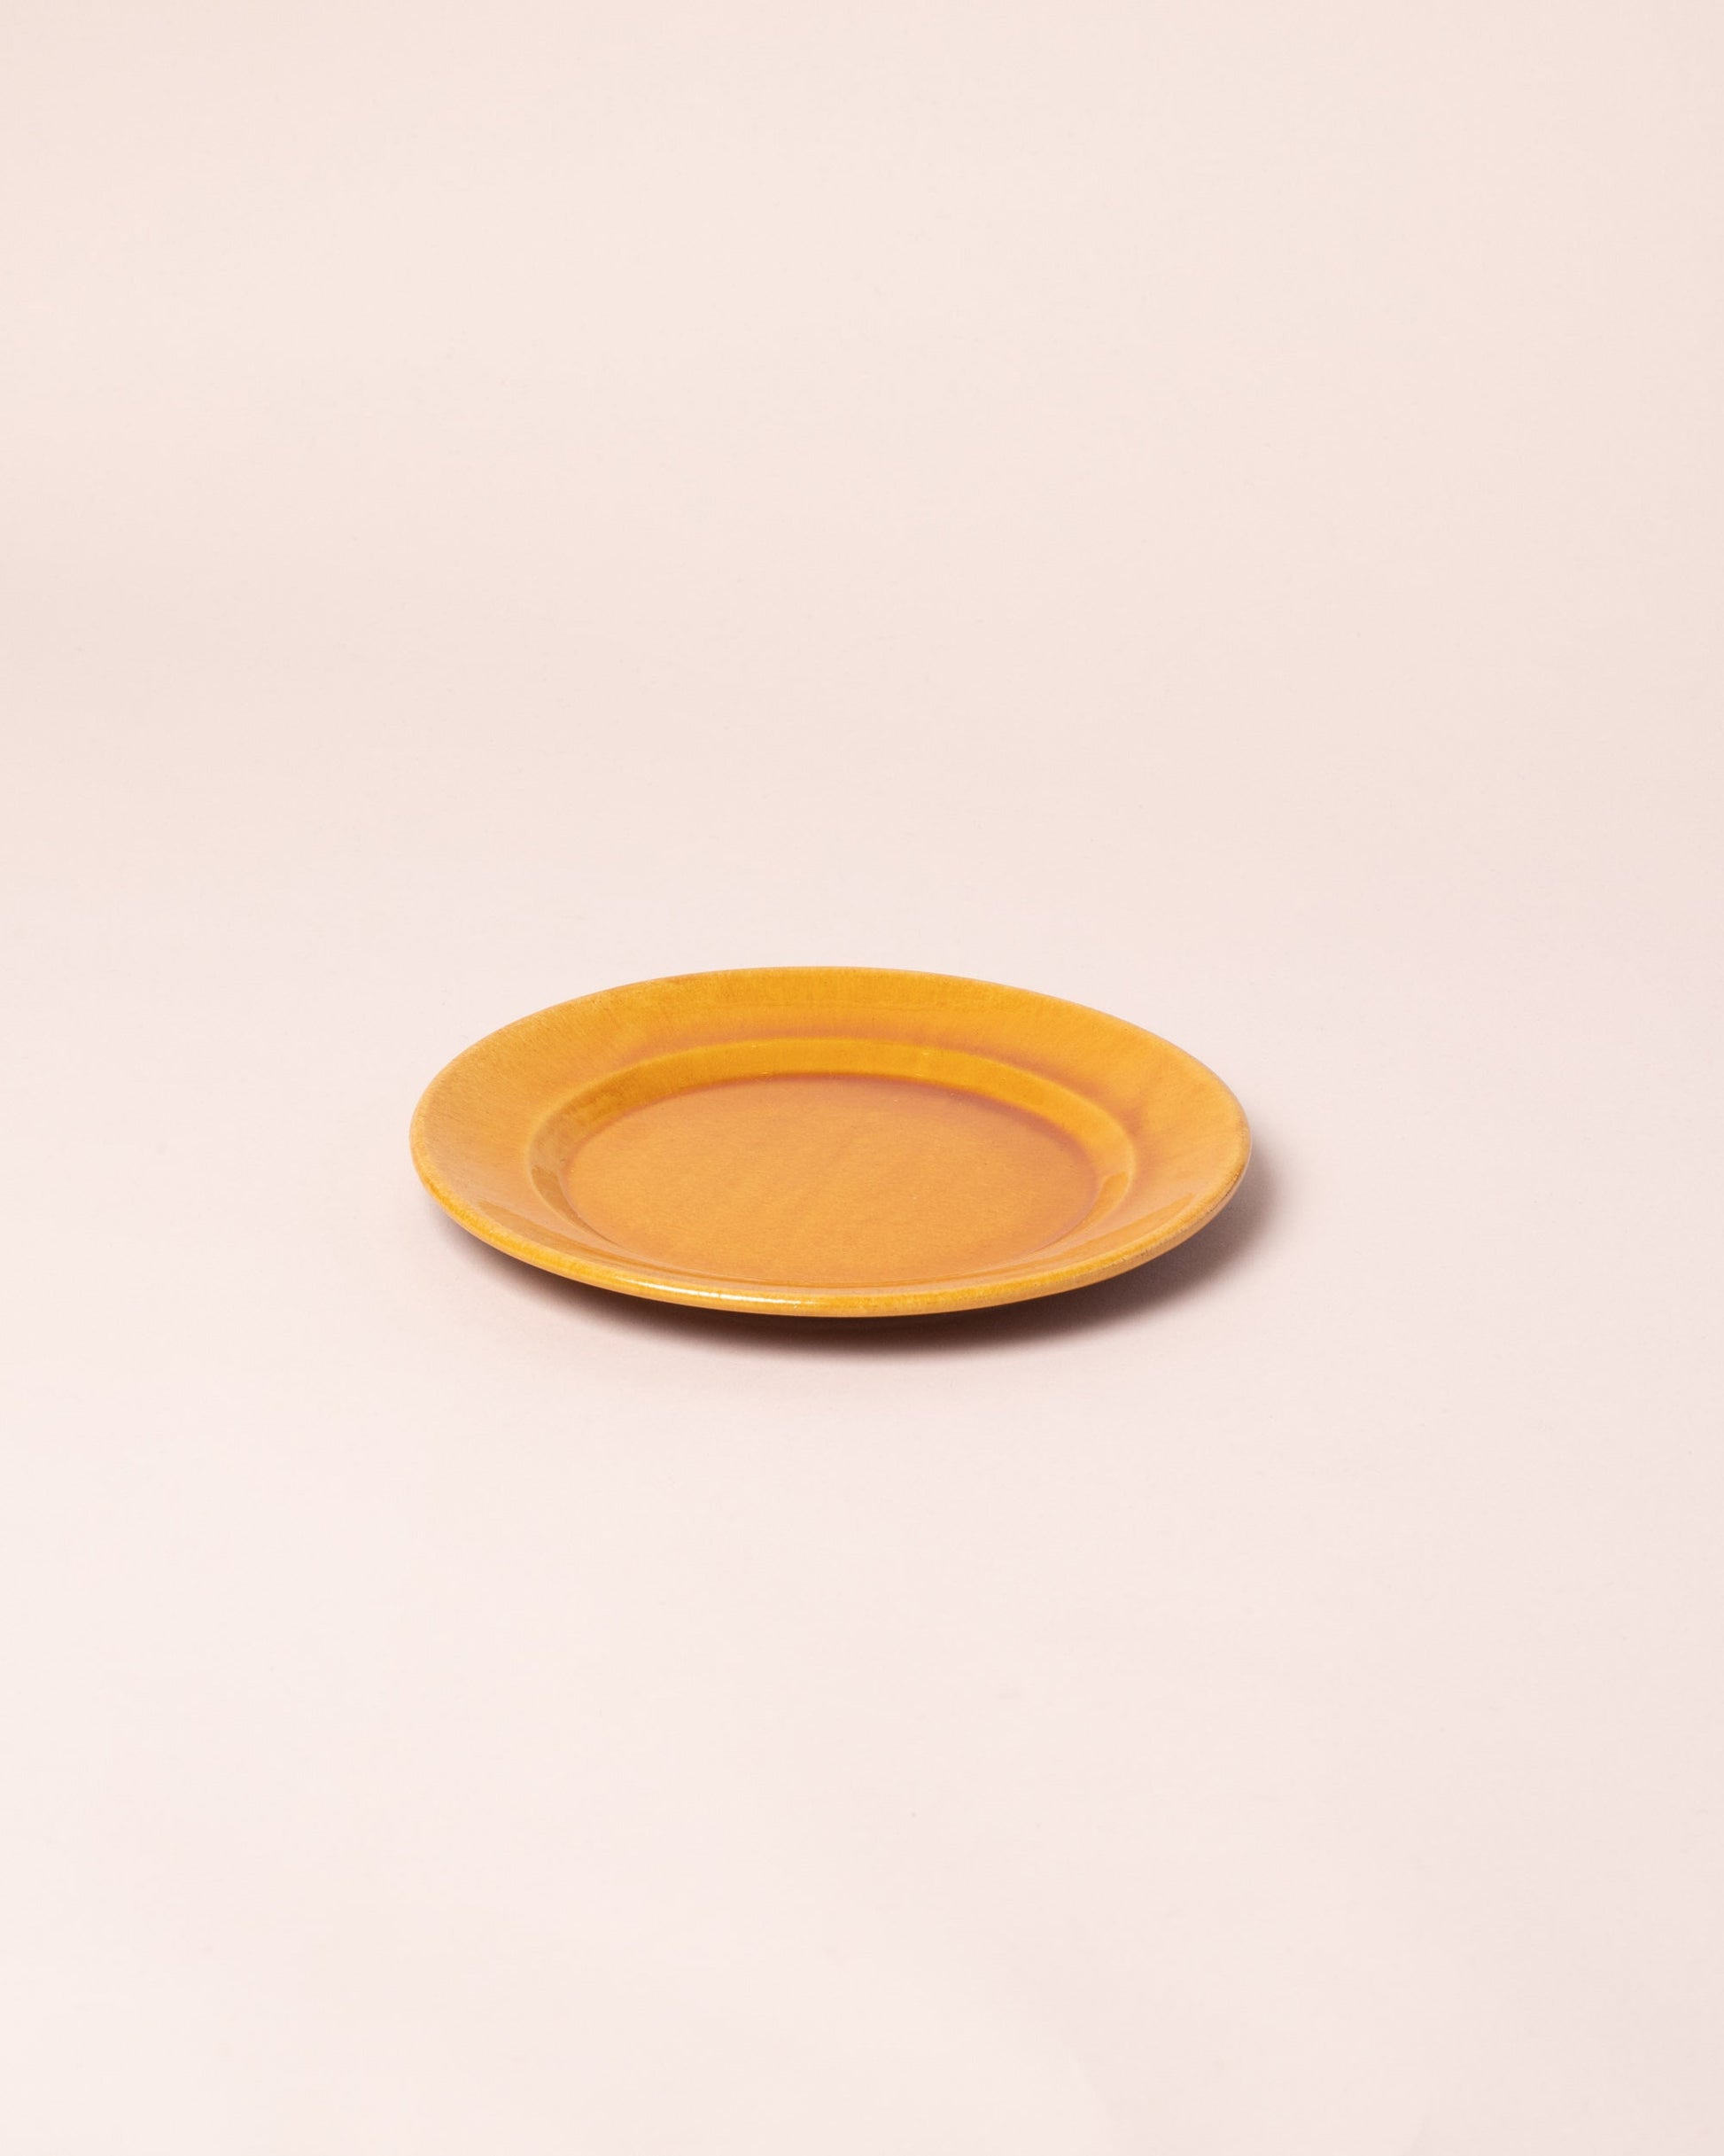 La Ceramica Vincenzo Del Monaco Caramel Yellow Dessert Dish on light color background.